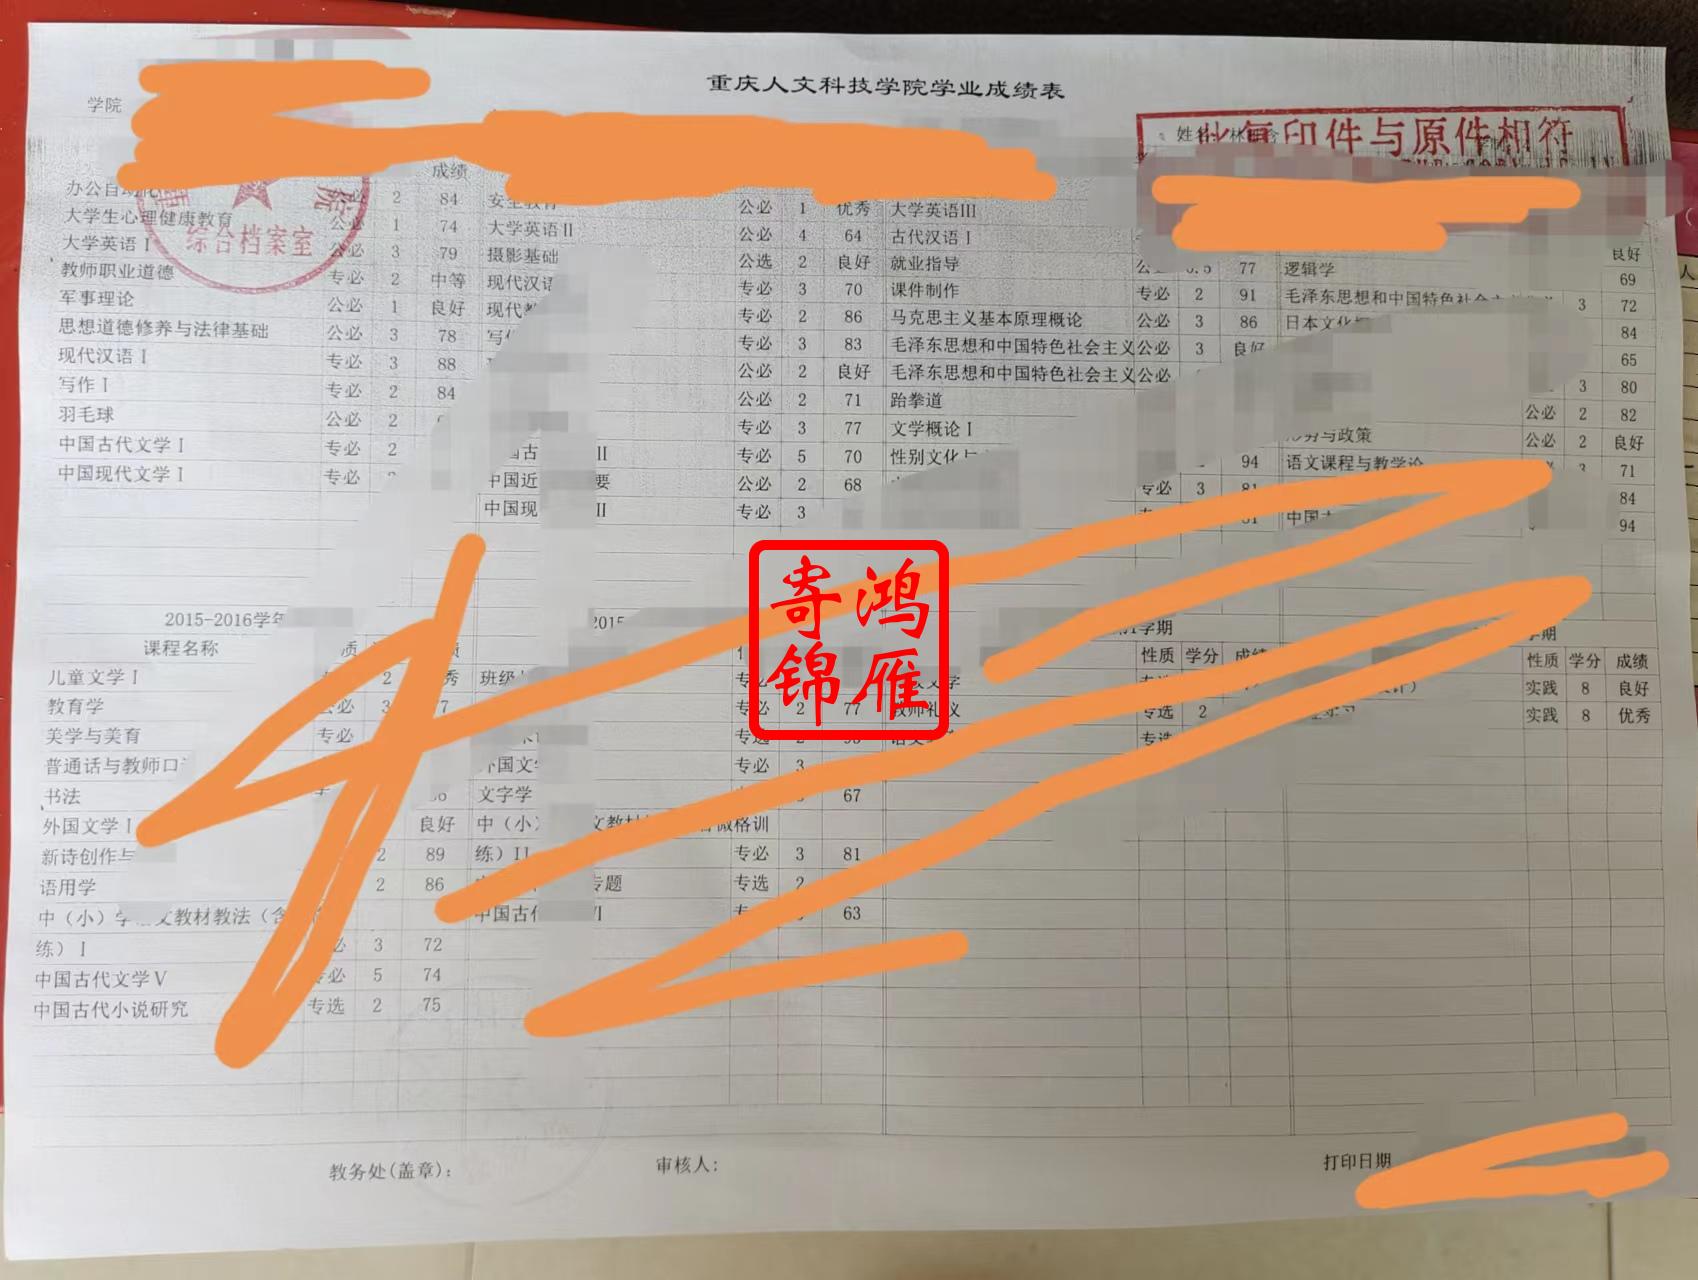 重庆人文科技学院本科中文成绩单打印案例.jpg